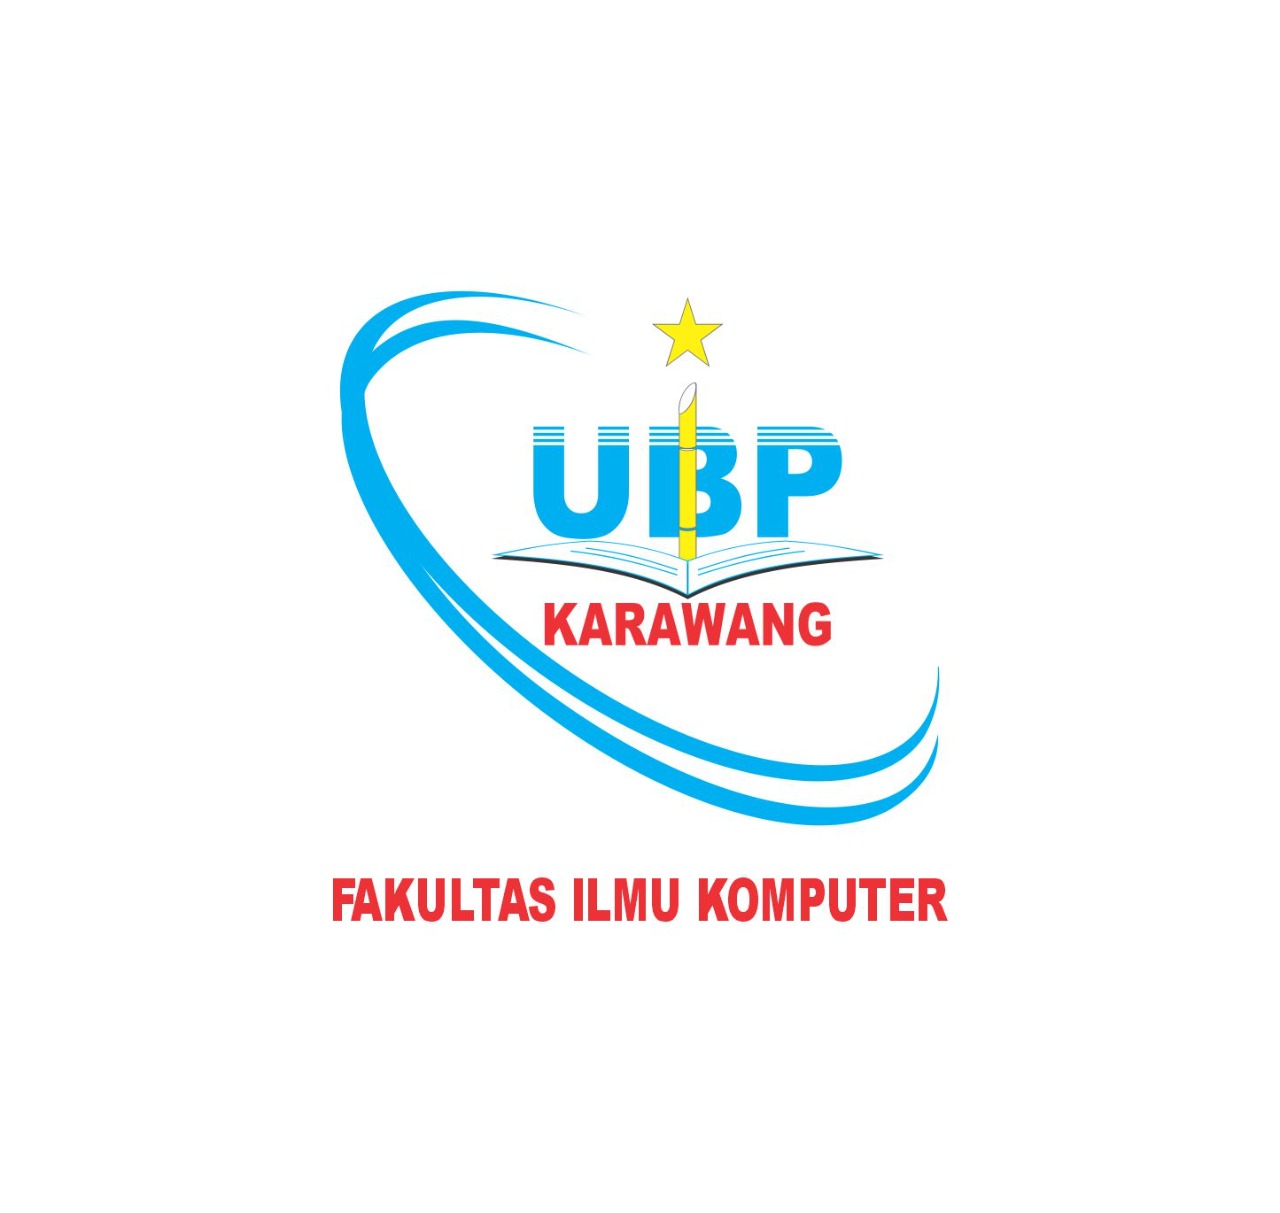 Logo FIK